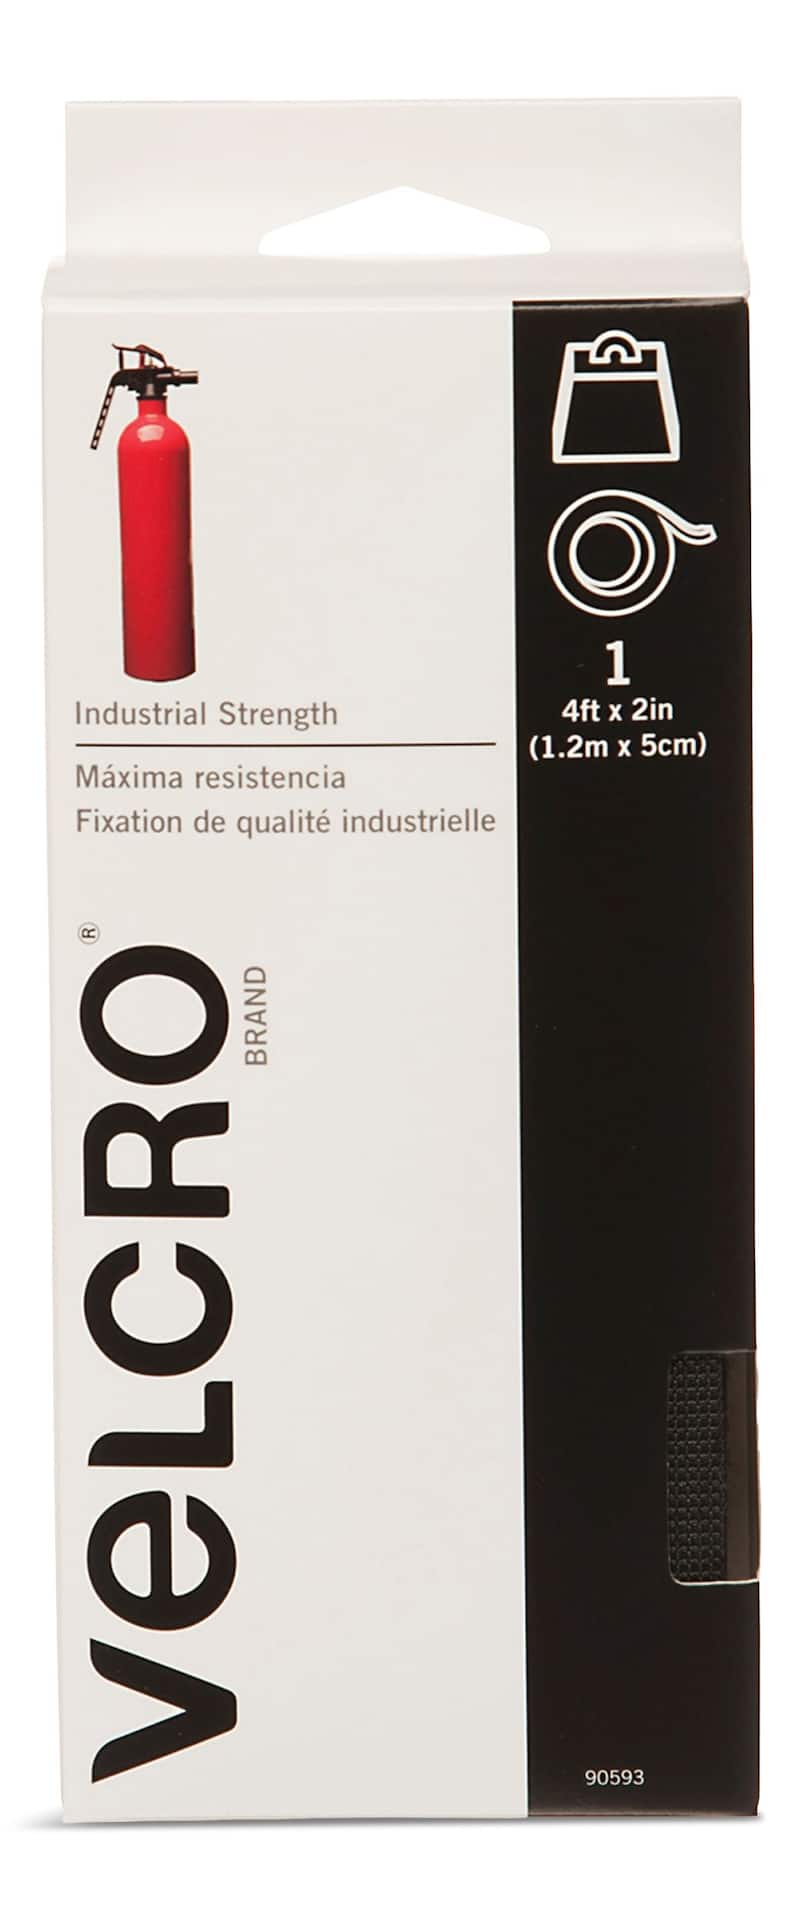 VELCRO 4 in. x 2 in. Industrial Strength Strips in Black (2-Pack